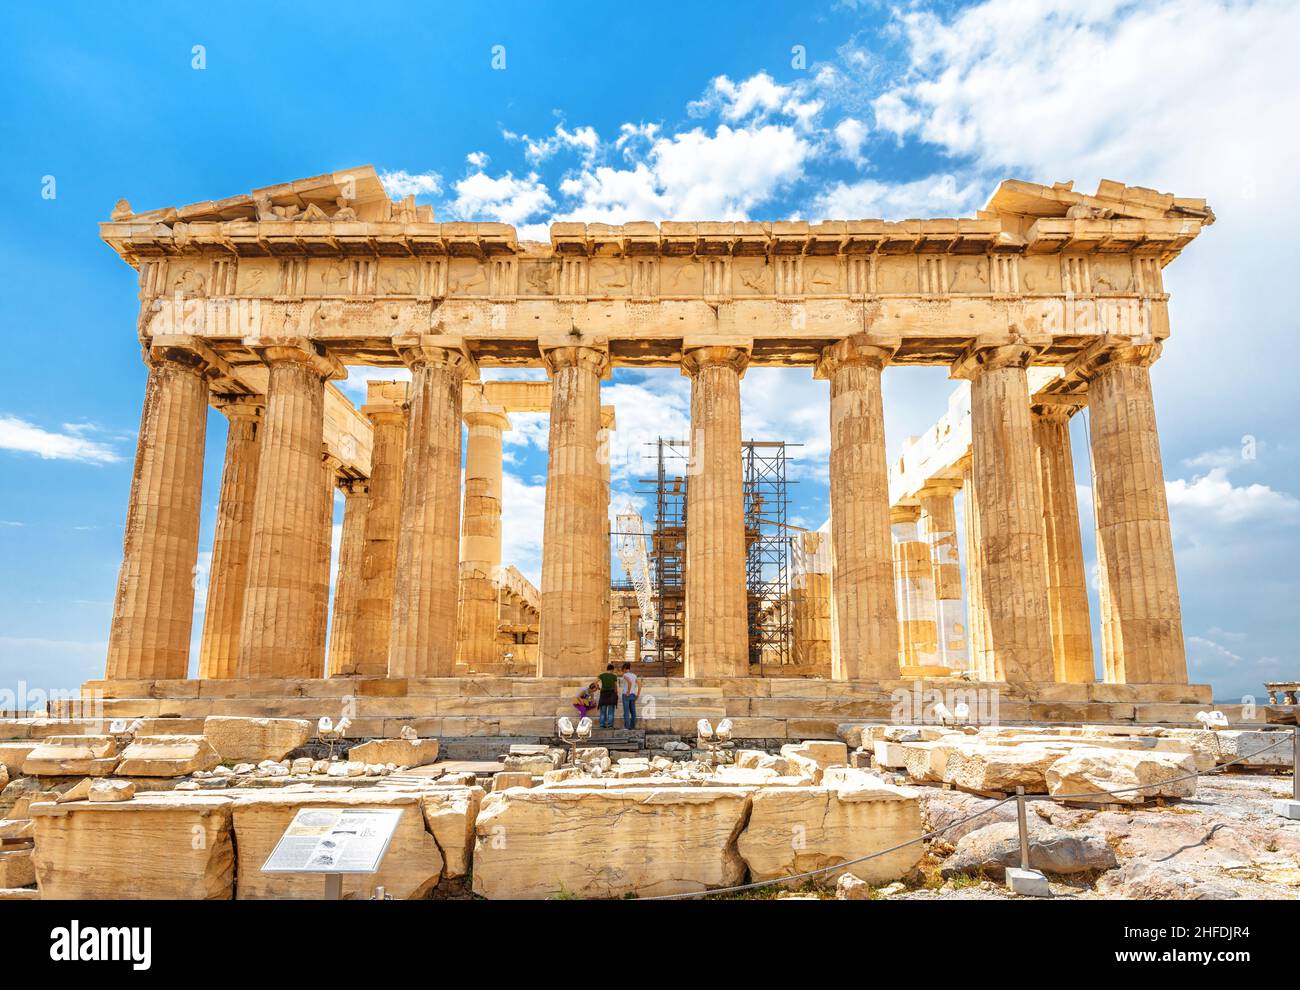 Atene - 8 maggio 2018: Tempio del Partenone sull'Acropoli di Atene, Grecia, Europa. E' il punto di riferimento principale di Atene. Famose rovine dell'edificio, antico monu greco Foto Stock